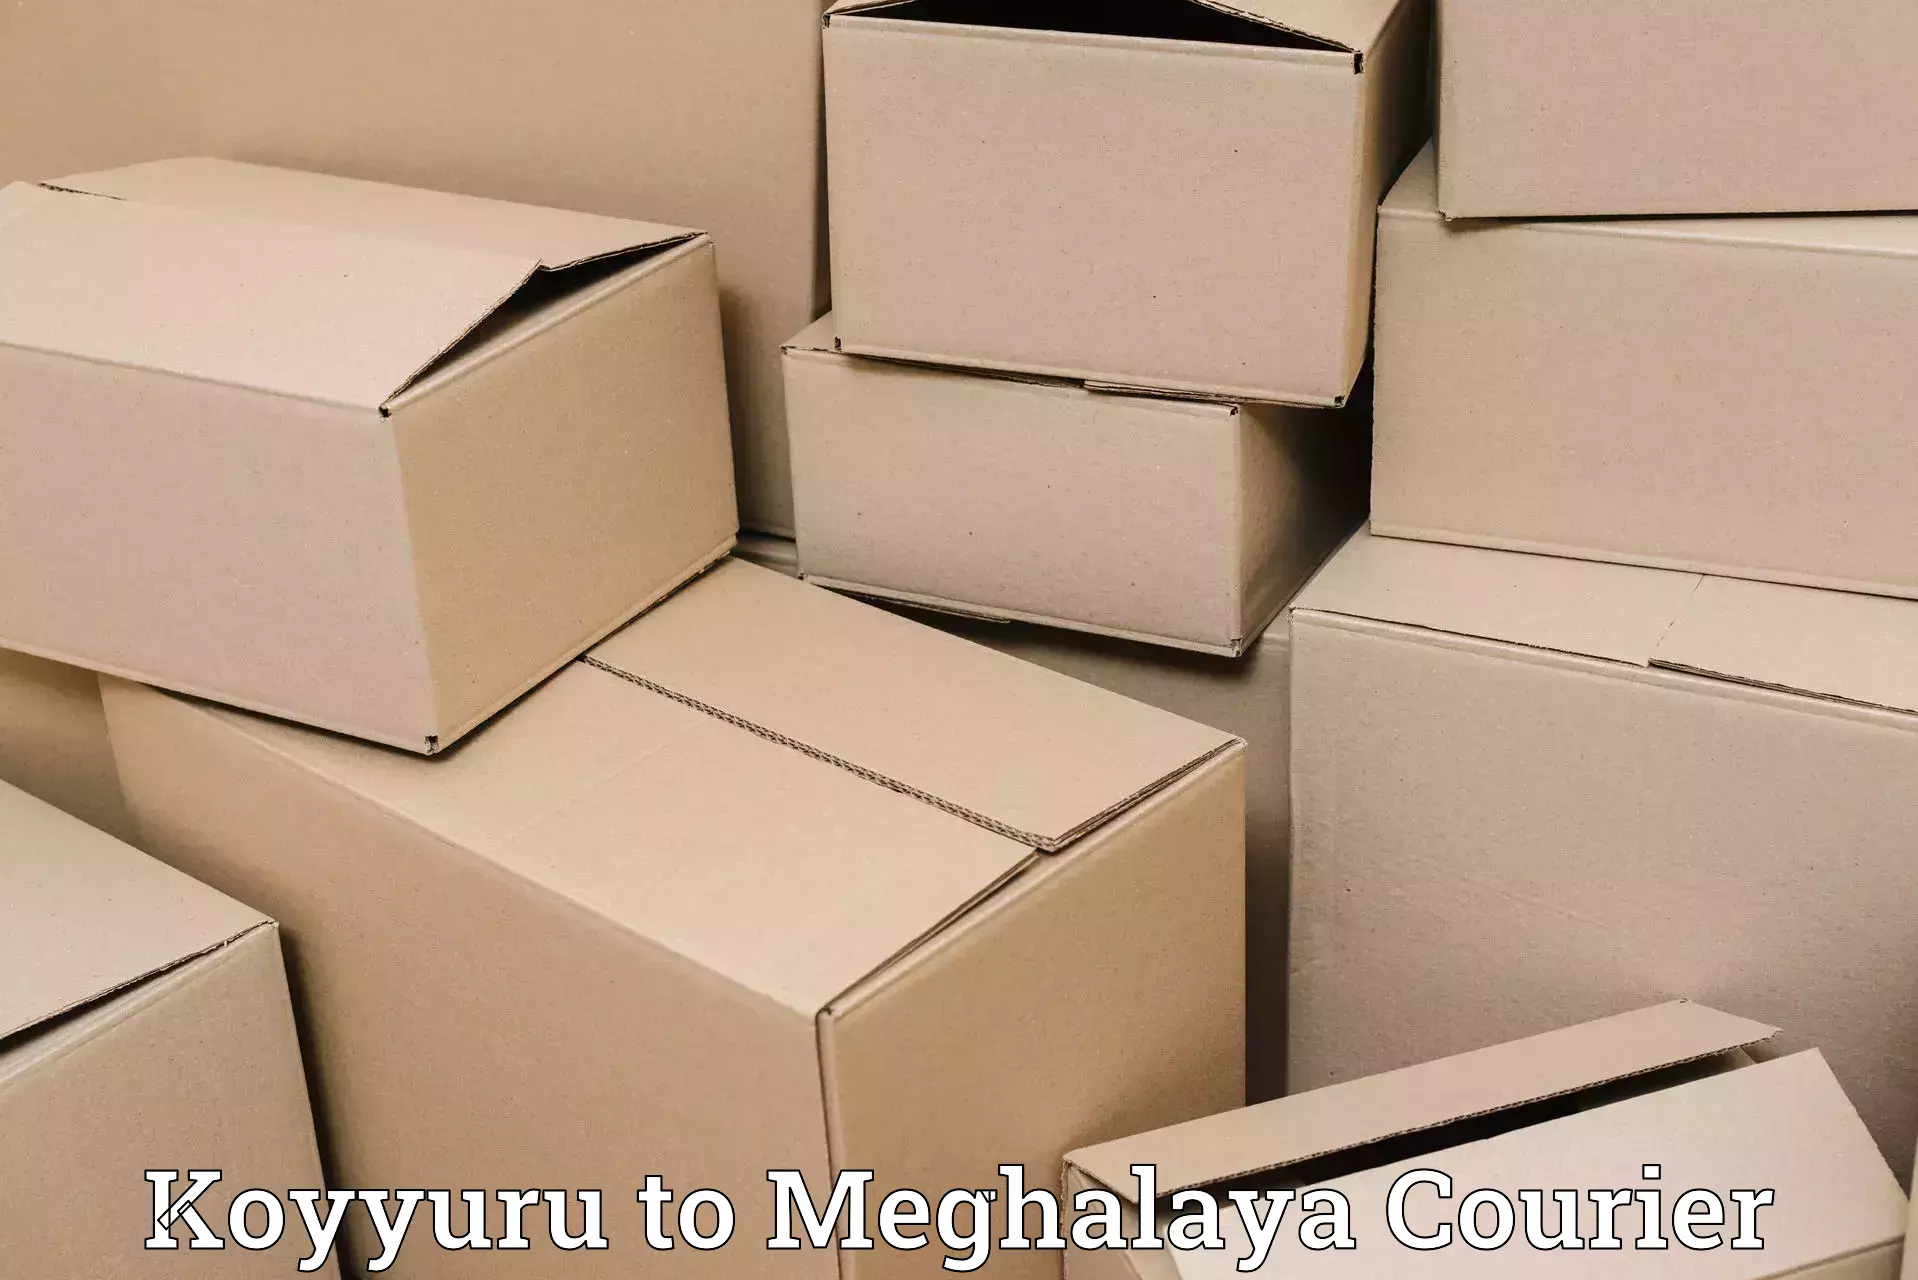 Customer-oriented courier services Koyyuru to Khliehriat